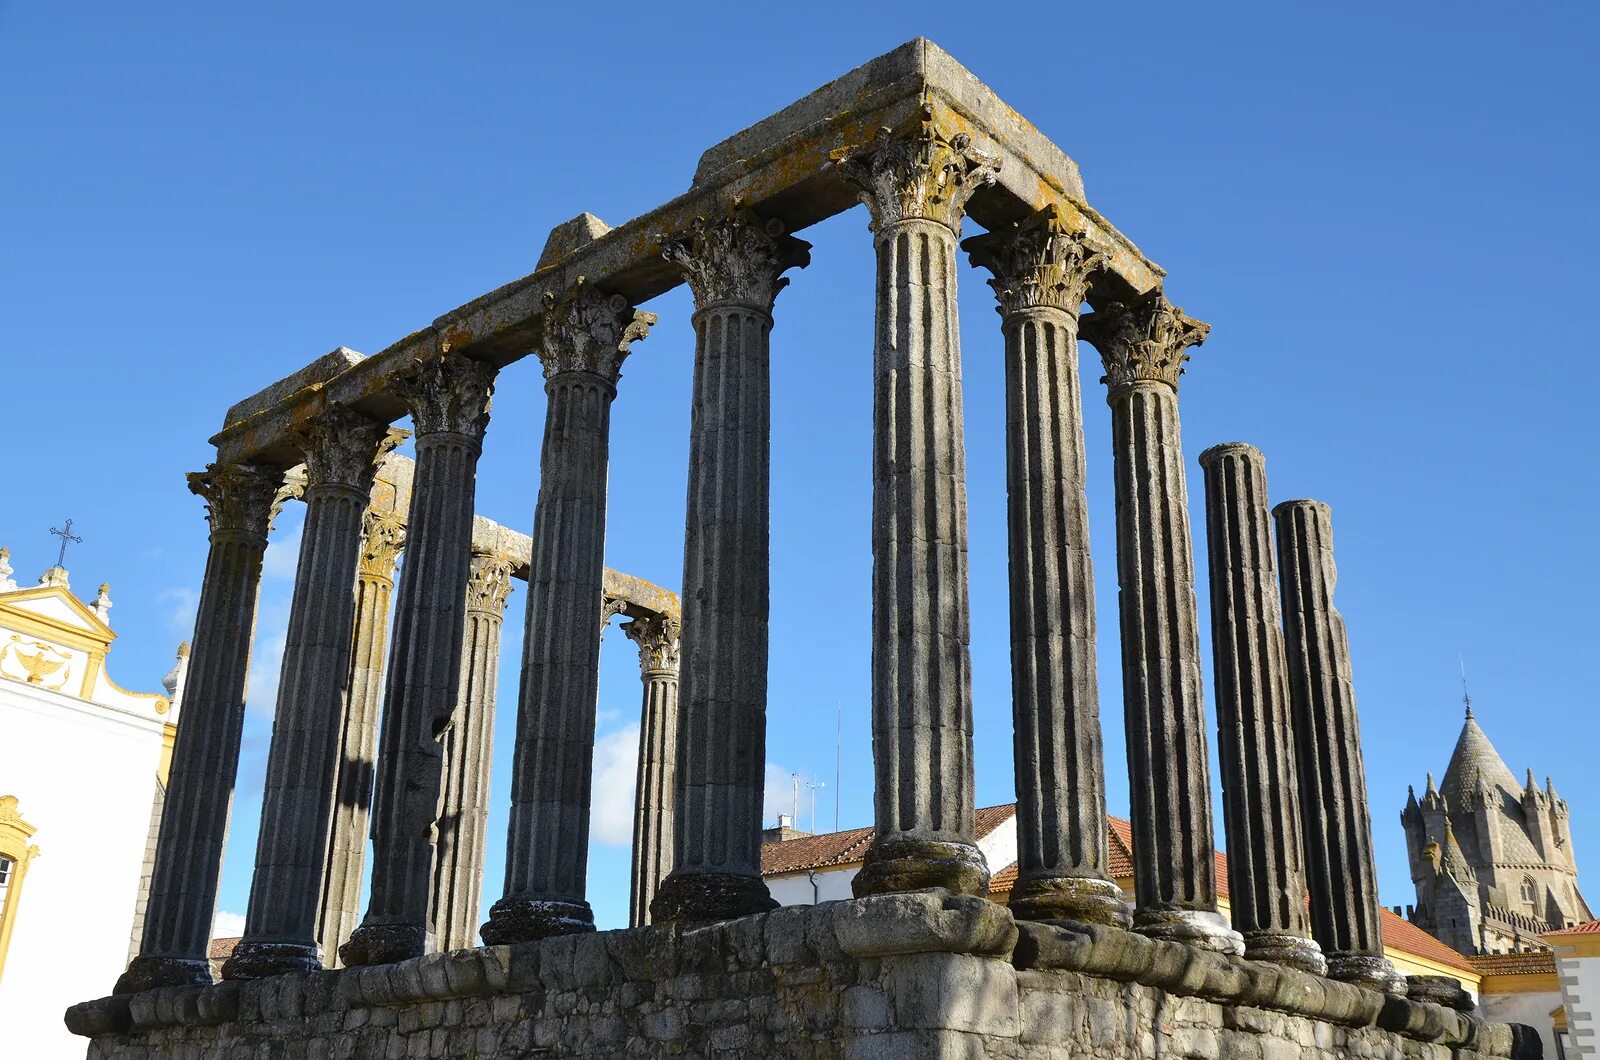 Roman temple. Эвора мост. "The Temple (Portugal)". Templo de Hadrian in Rome.